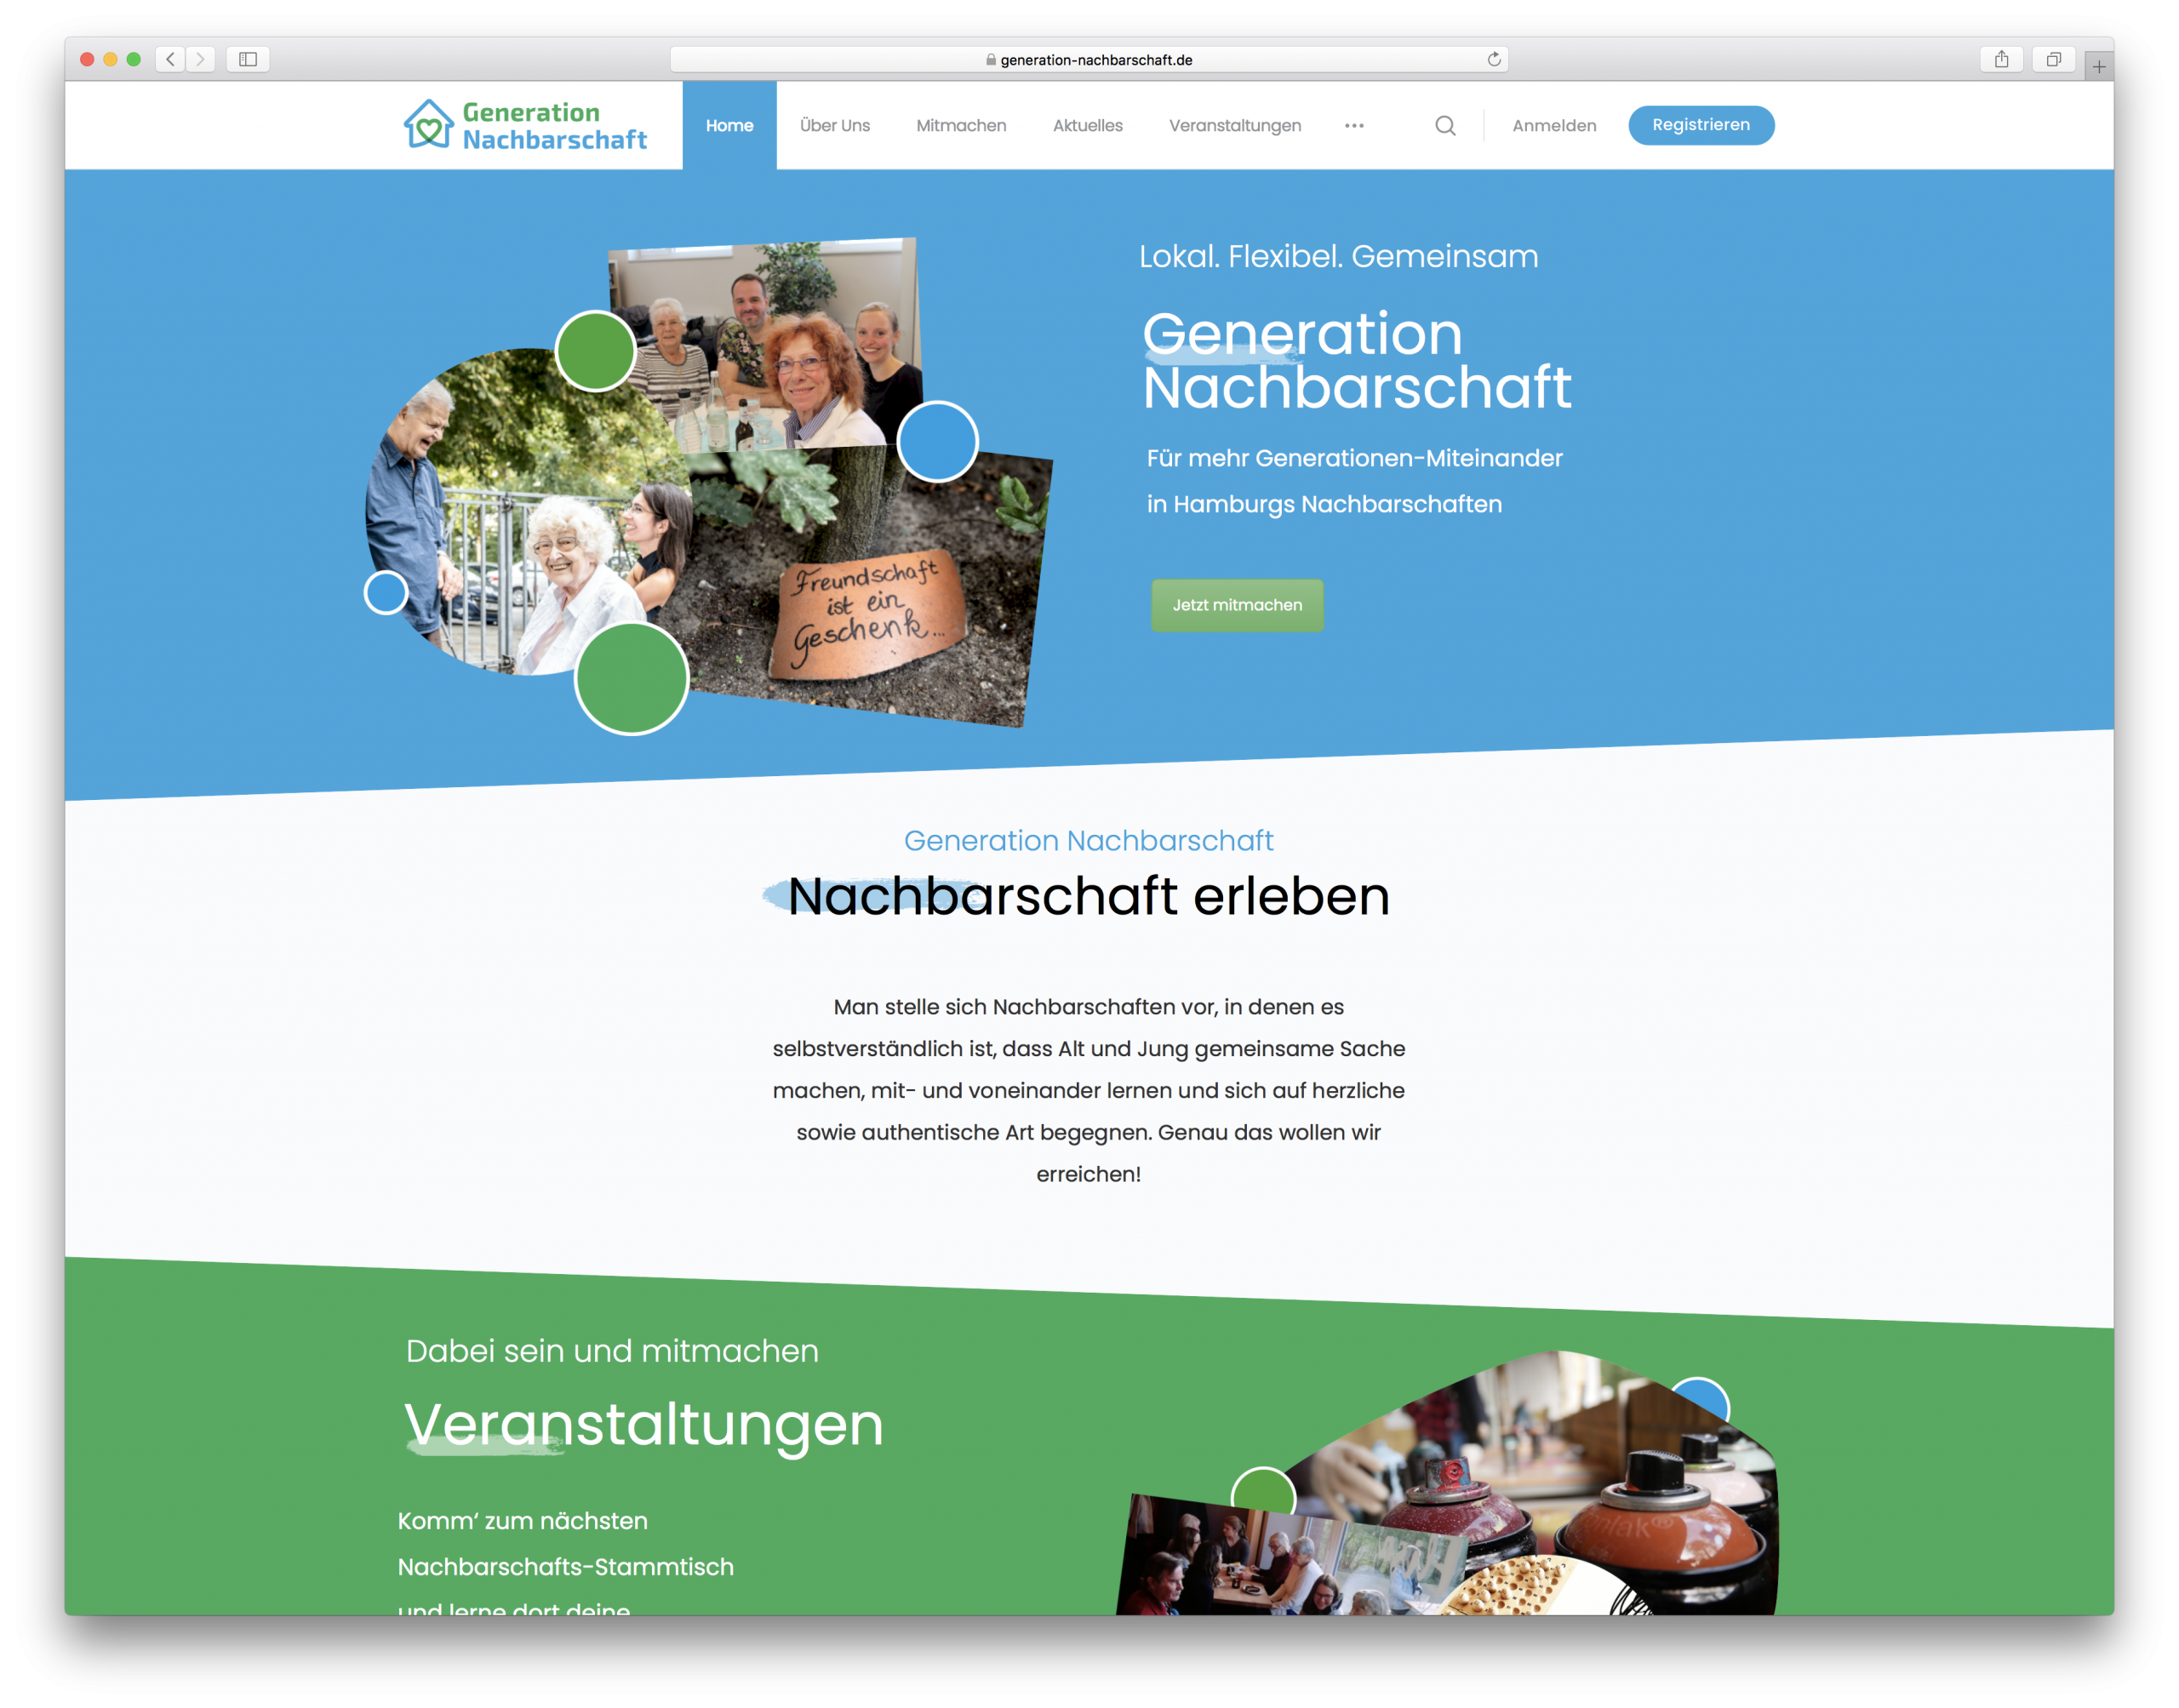 Generation Nachbarschaft social media netzwerk wordpress redesign homepage